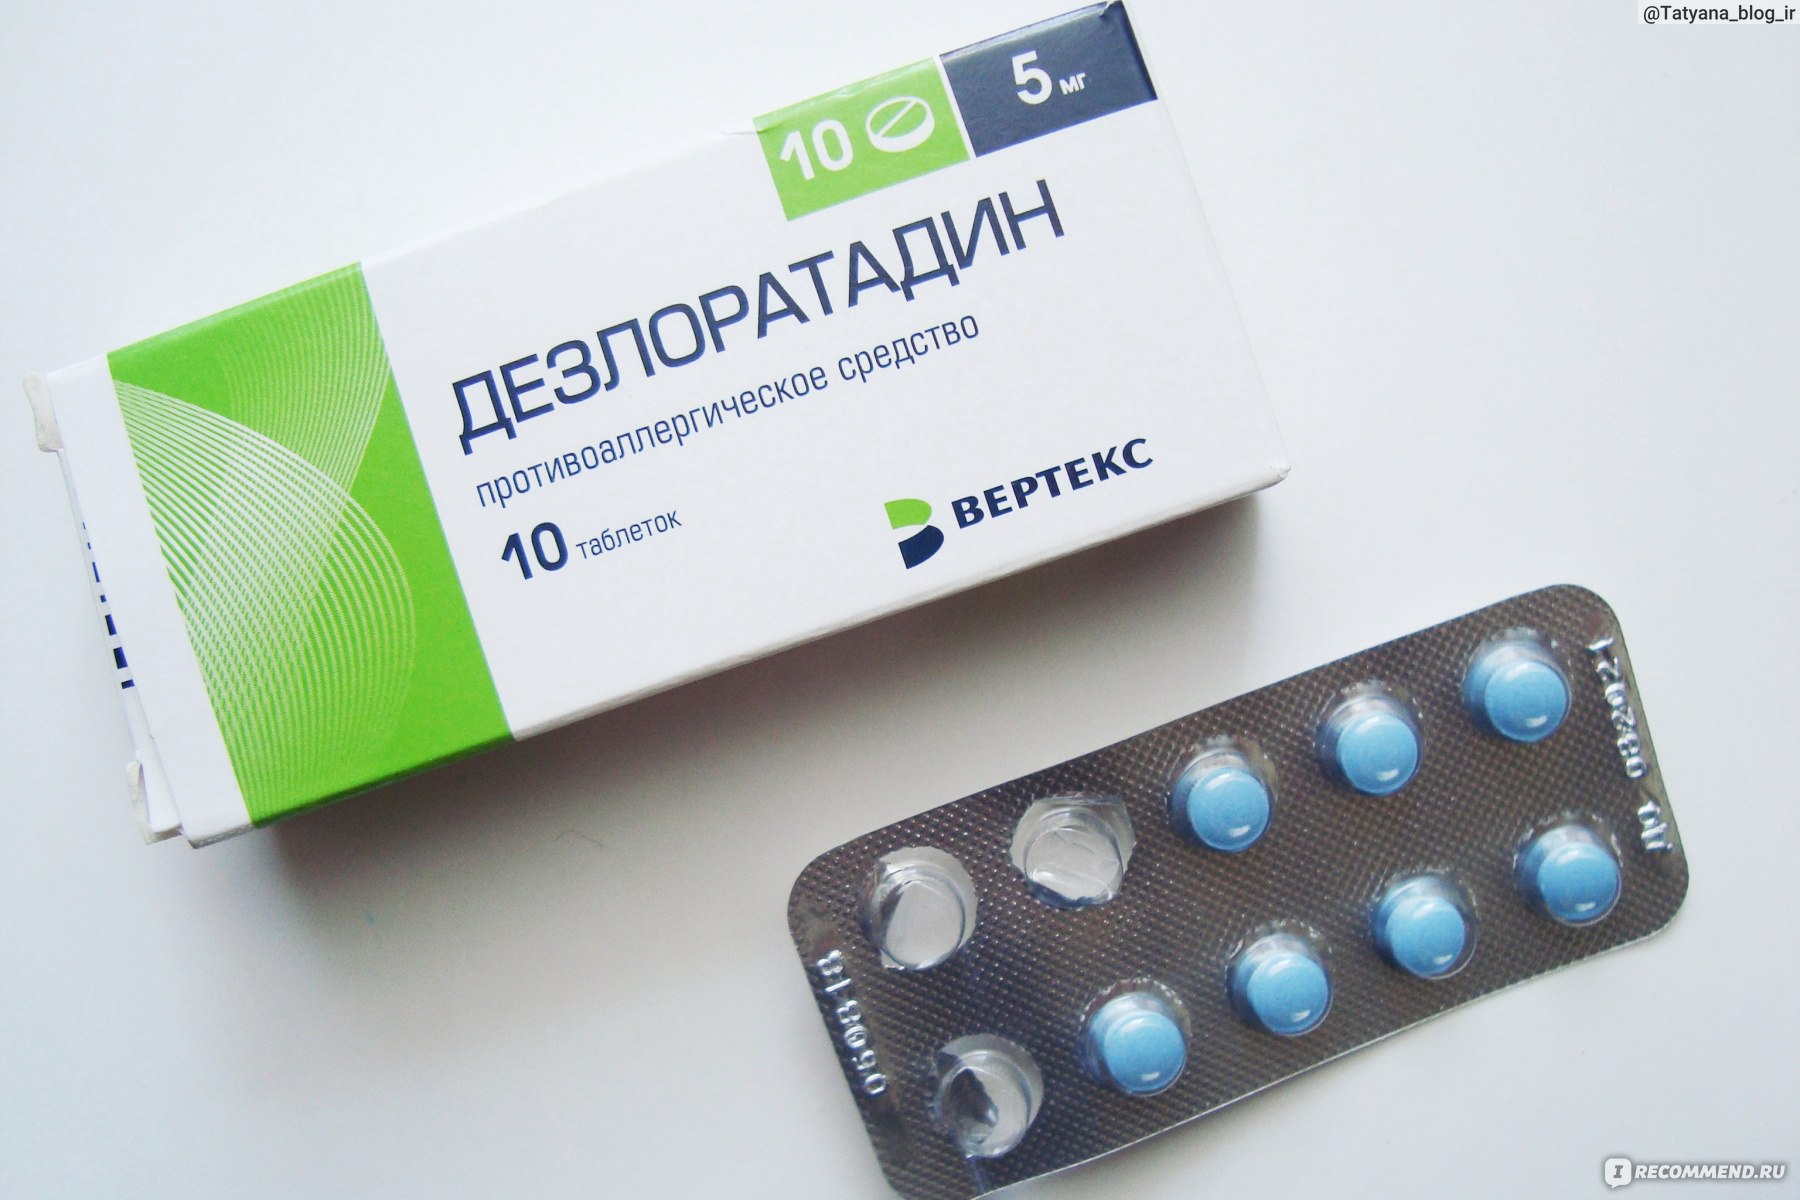 Противоаллергическое средство Вертекс Дезлоратадин 5 мг - «Дезлоратадин .